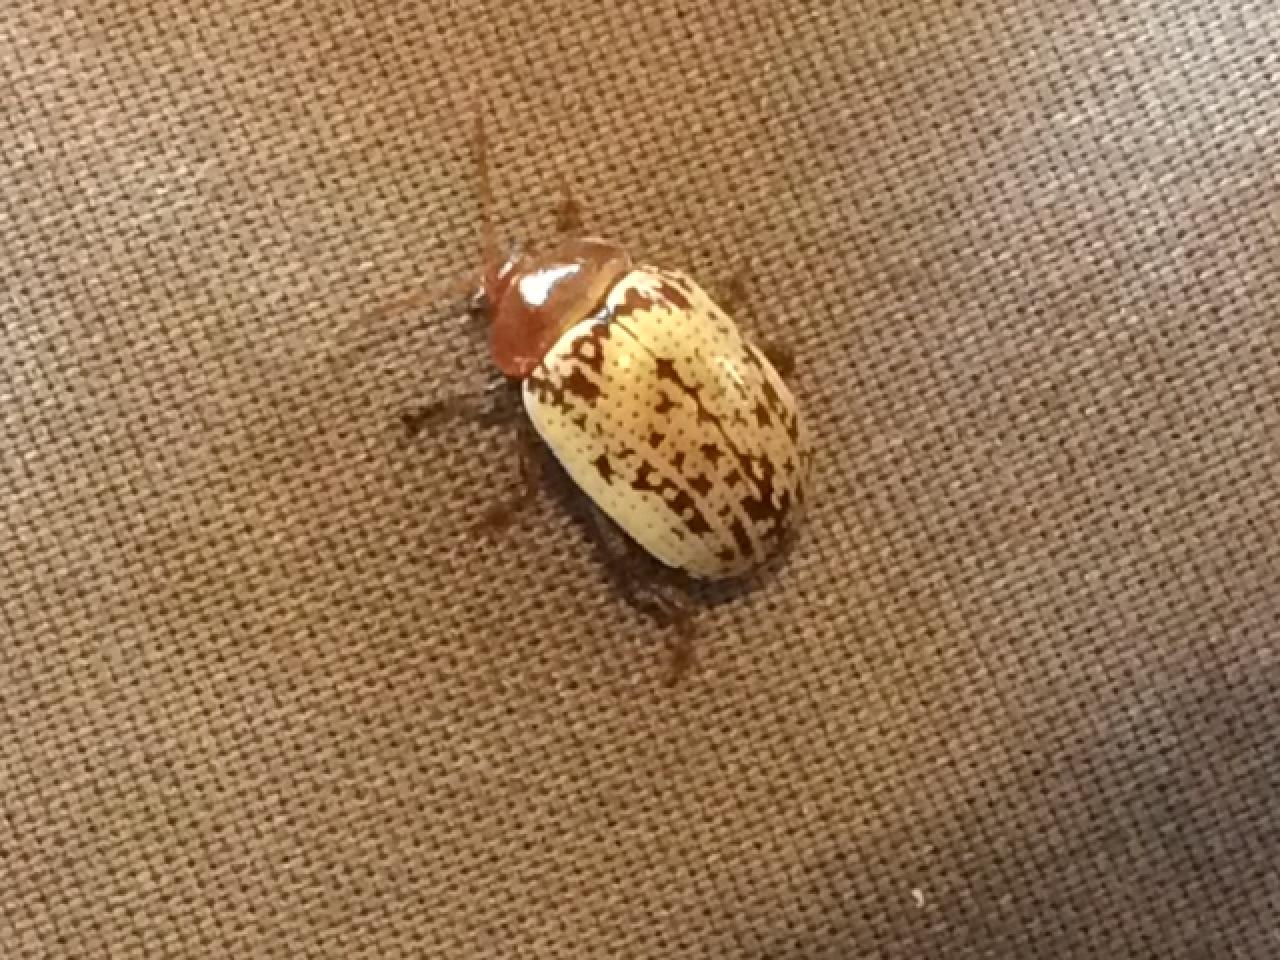 Sumac flea beetle.